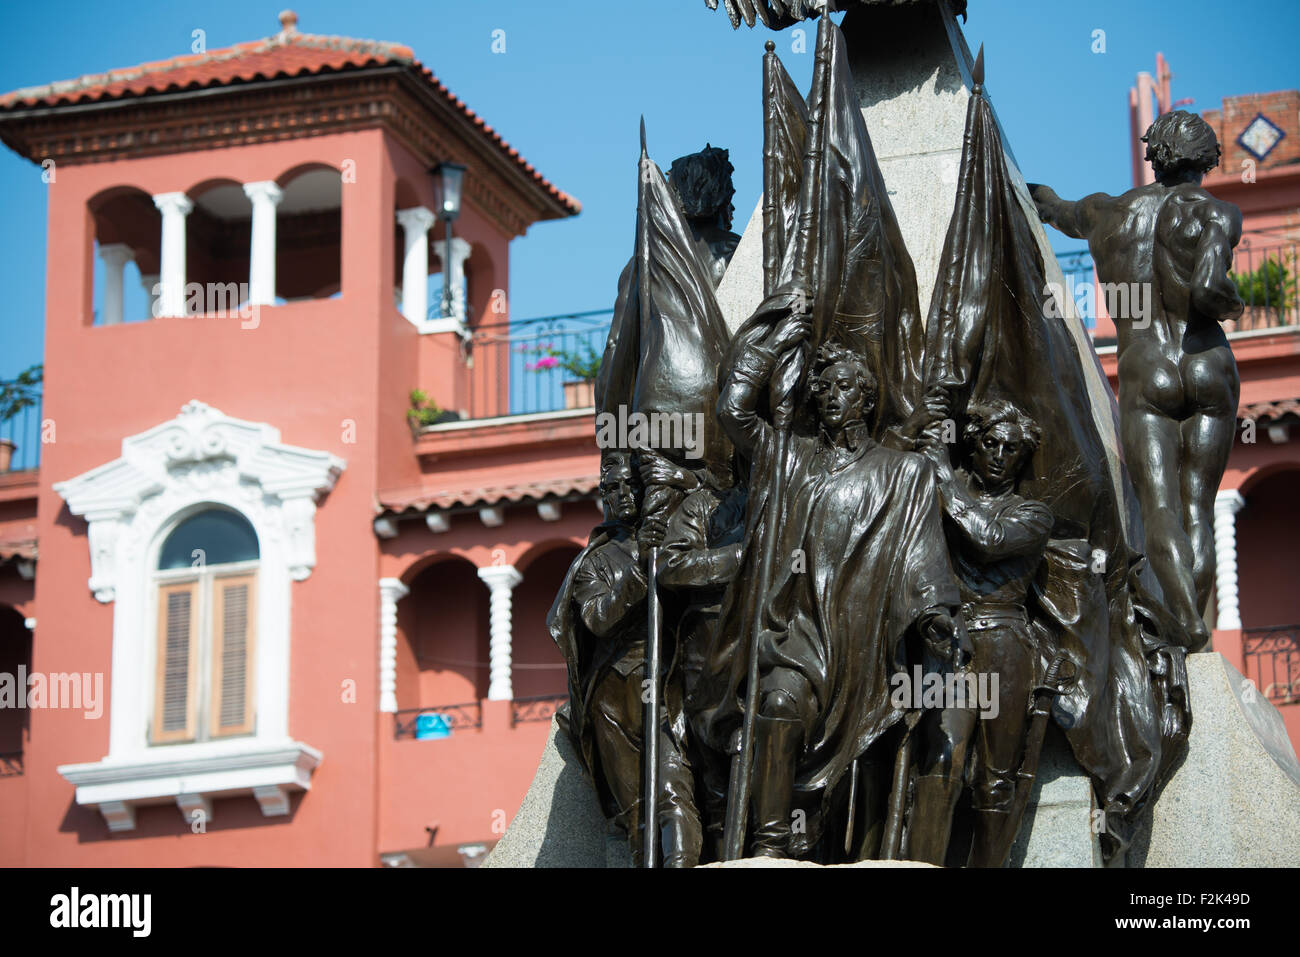 PANAMA CITY, Panama--circondato da architettura del XIX secolo, Plaza Simon Bolivar è una piccola piazza nel Casco Viejo, un blocco dal fronte mare. Esso è chiamato dopo il generale venezuelano Simón Bolívar, "Liberatore dell America Latina ", e una statua di Bolivar sorge ben visibile al centro della piazza. Foto Stock